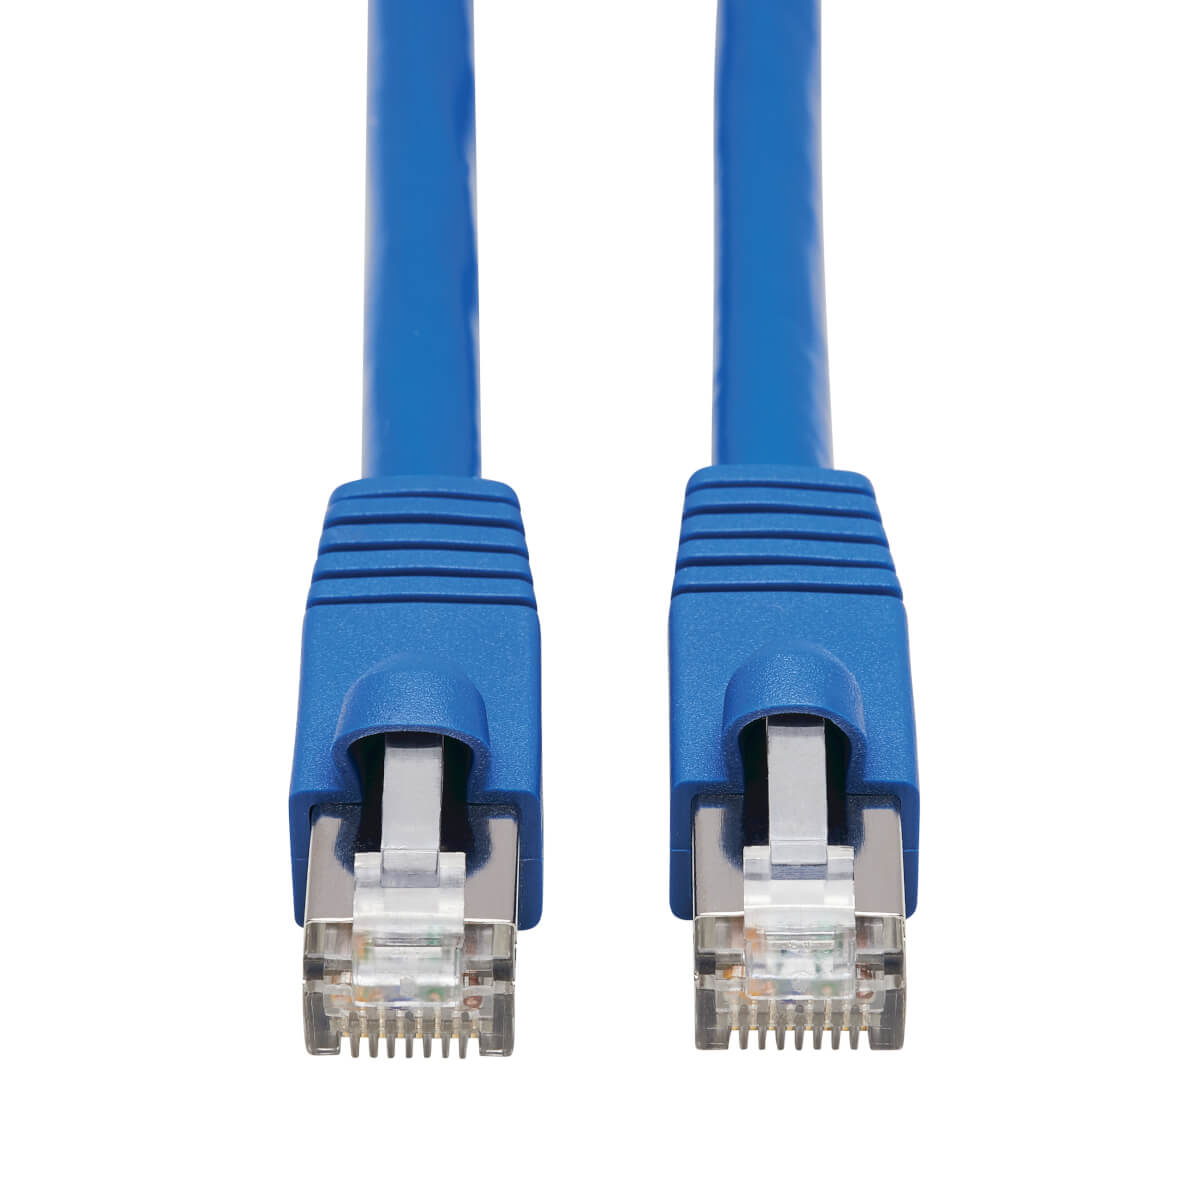 Connection 15. Cat.6 f/UTP 23 AWG rj45 Plug - with Boots. RJ-45 (M). Cable UIM-dom, cat5 Patch Cable, 1 m Blue (dal) (p1bl Patch Cord cat5 1m Blue dal Bus). Промышленный Ethernet кабель.